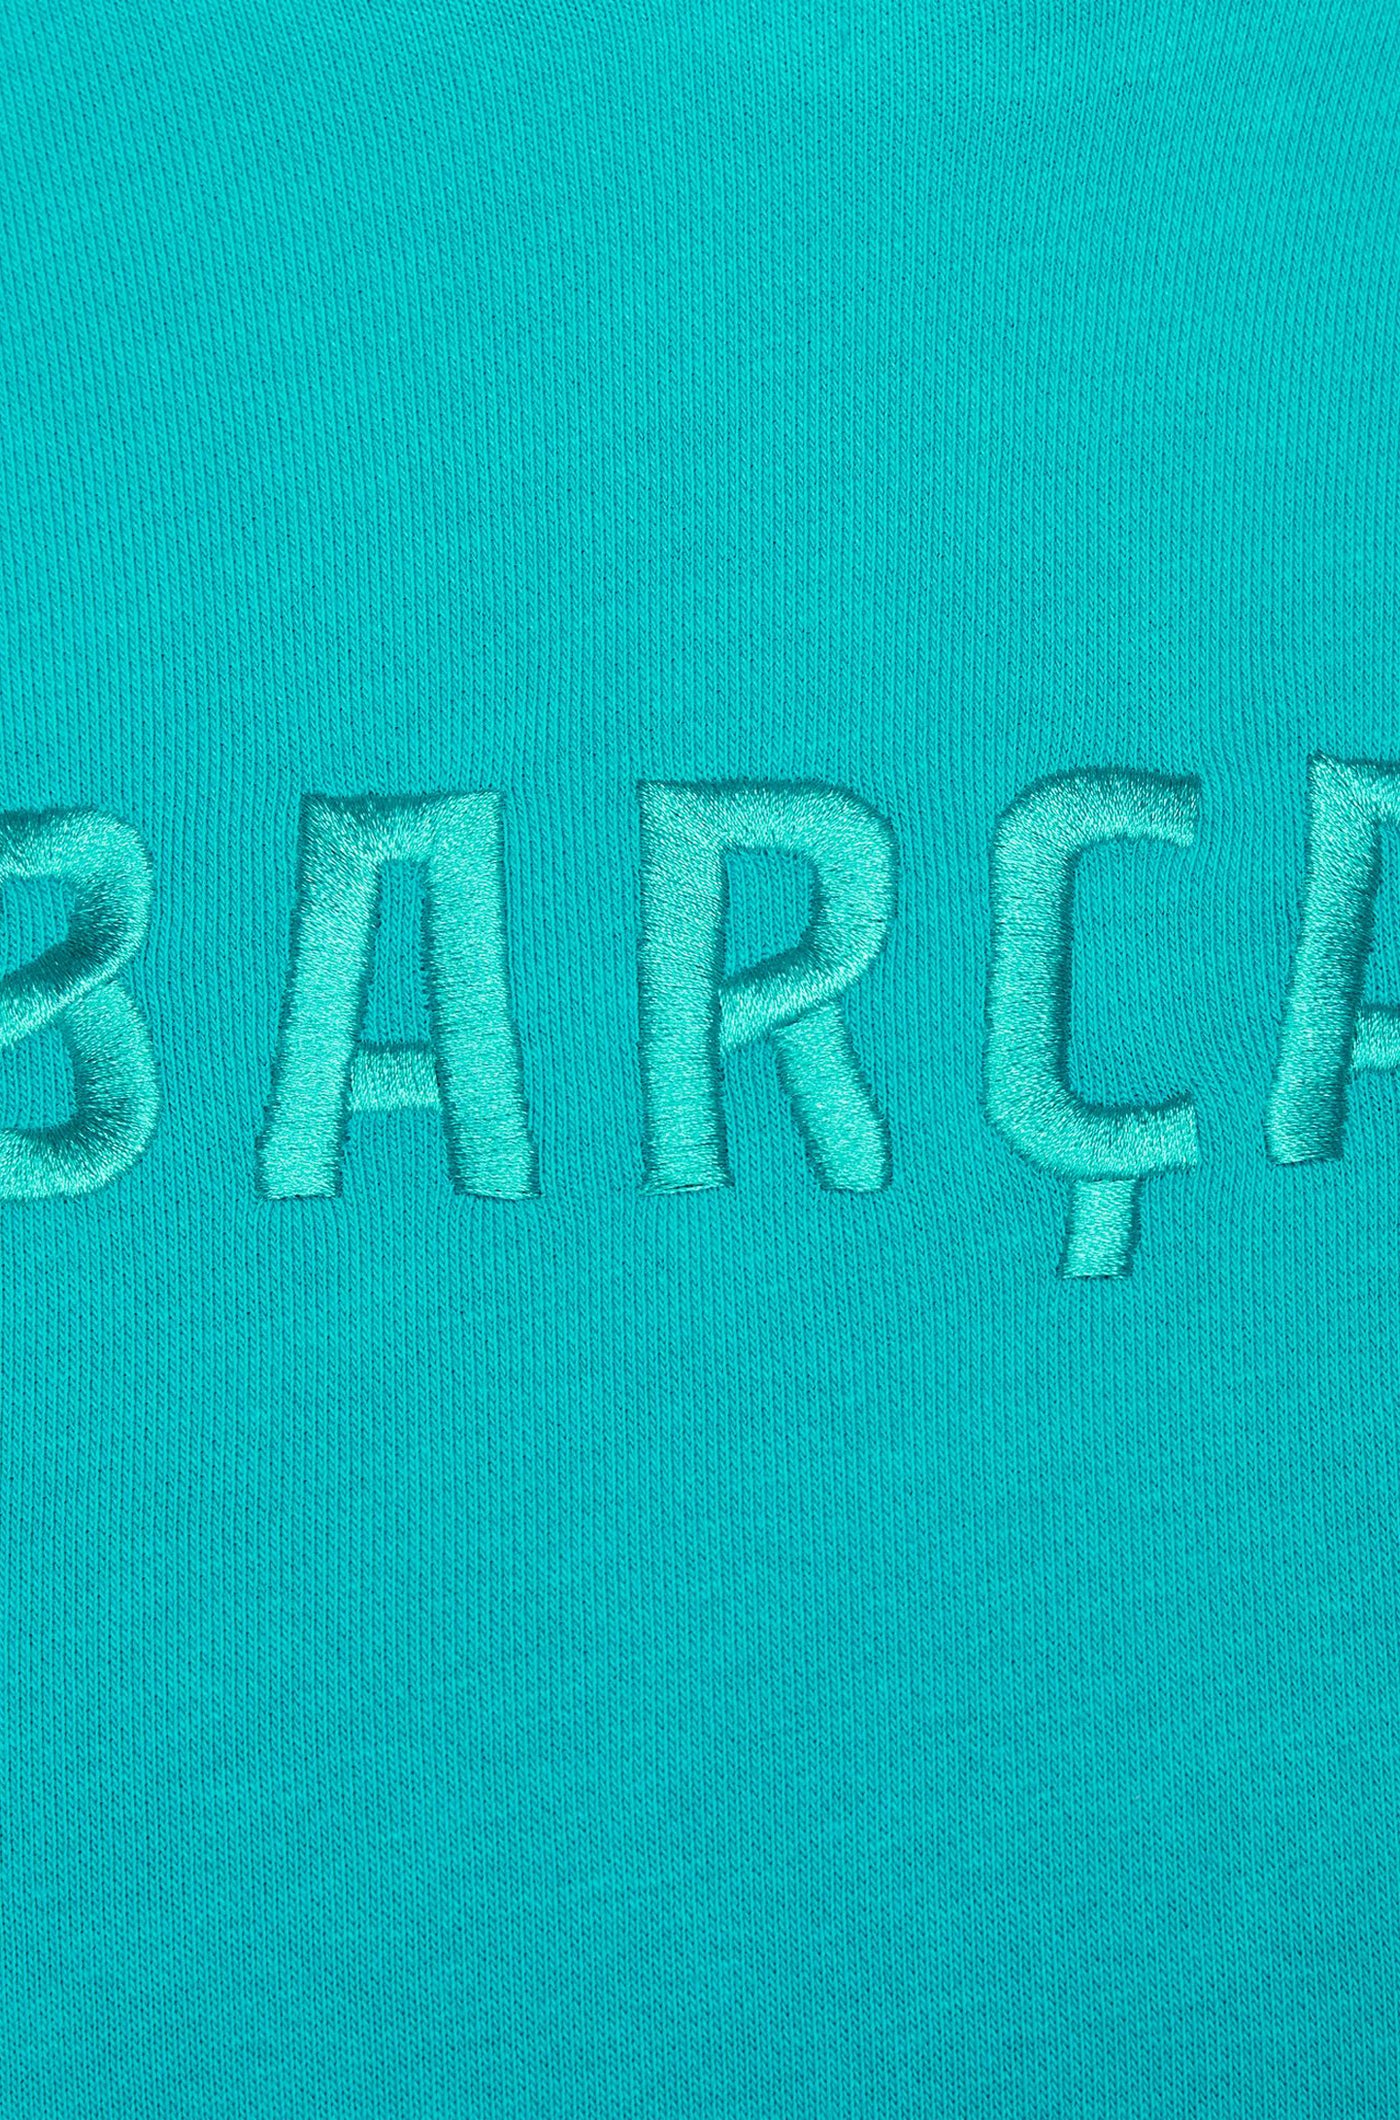 Hooded sweatshirt blue Barça Nike - Women